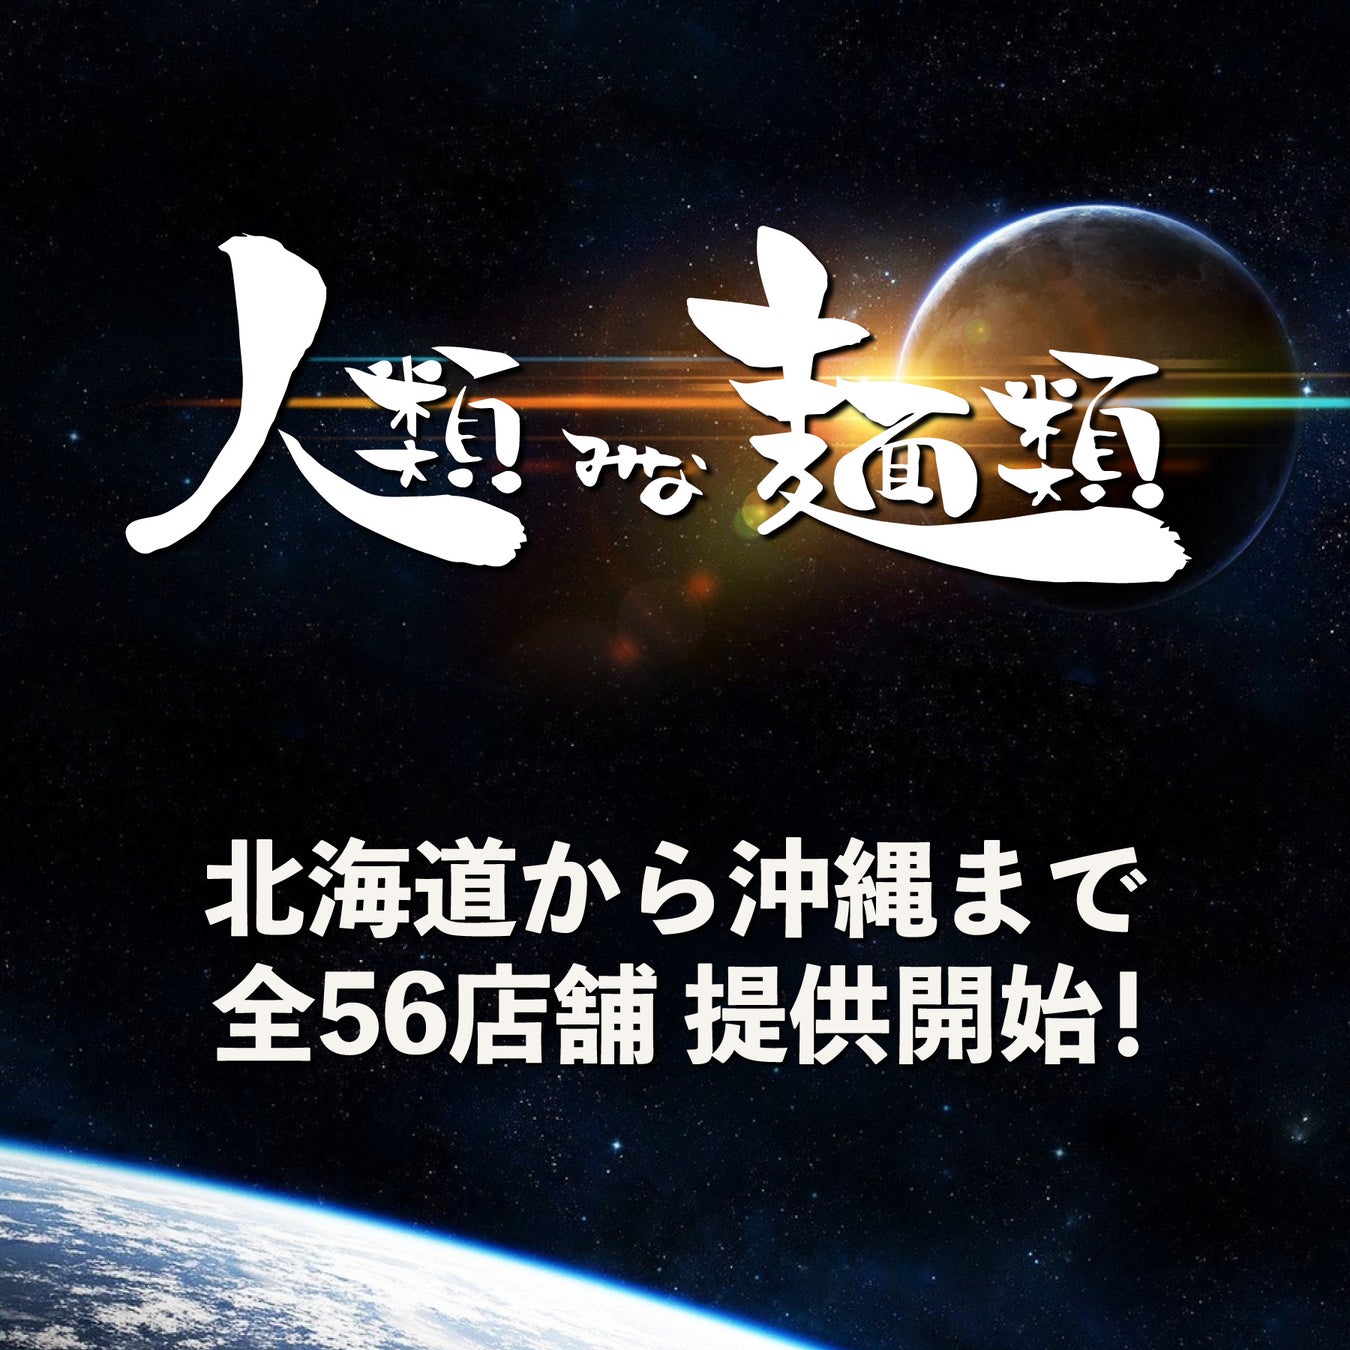 WEST EXPRESS銀河で楽しむ 兵庫 夏の体験イベントを開催します！兵庫デスティネーションキャンペーン アフターキャンペーン 特別企画